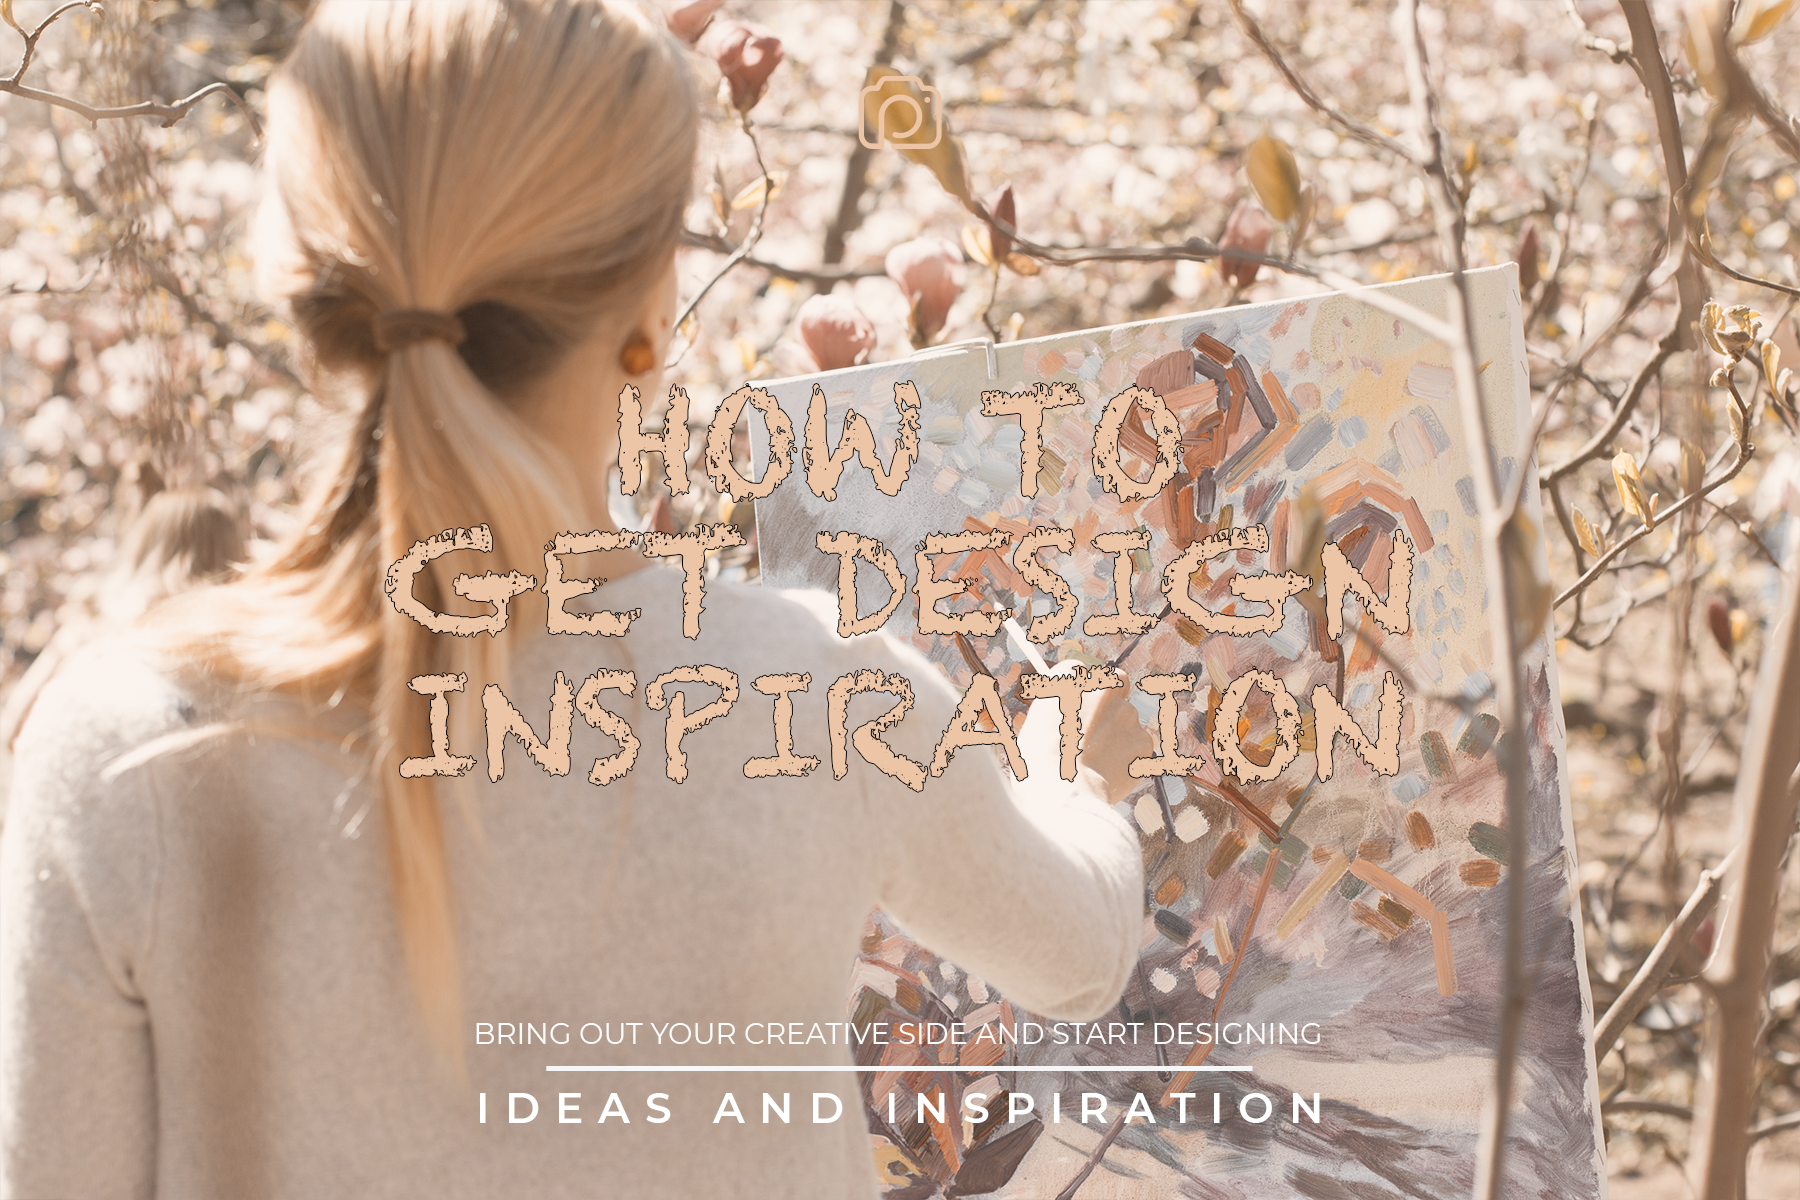 How to get design inspiration